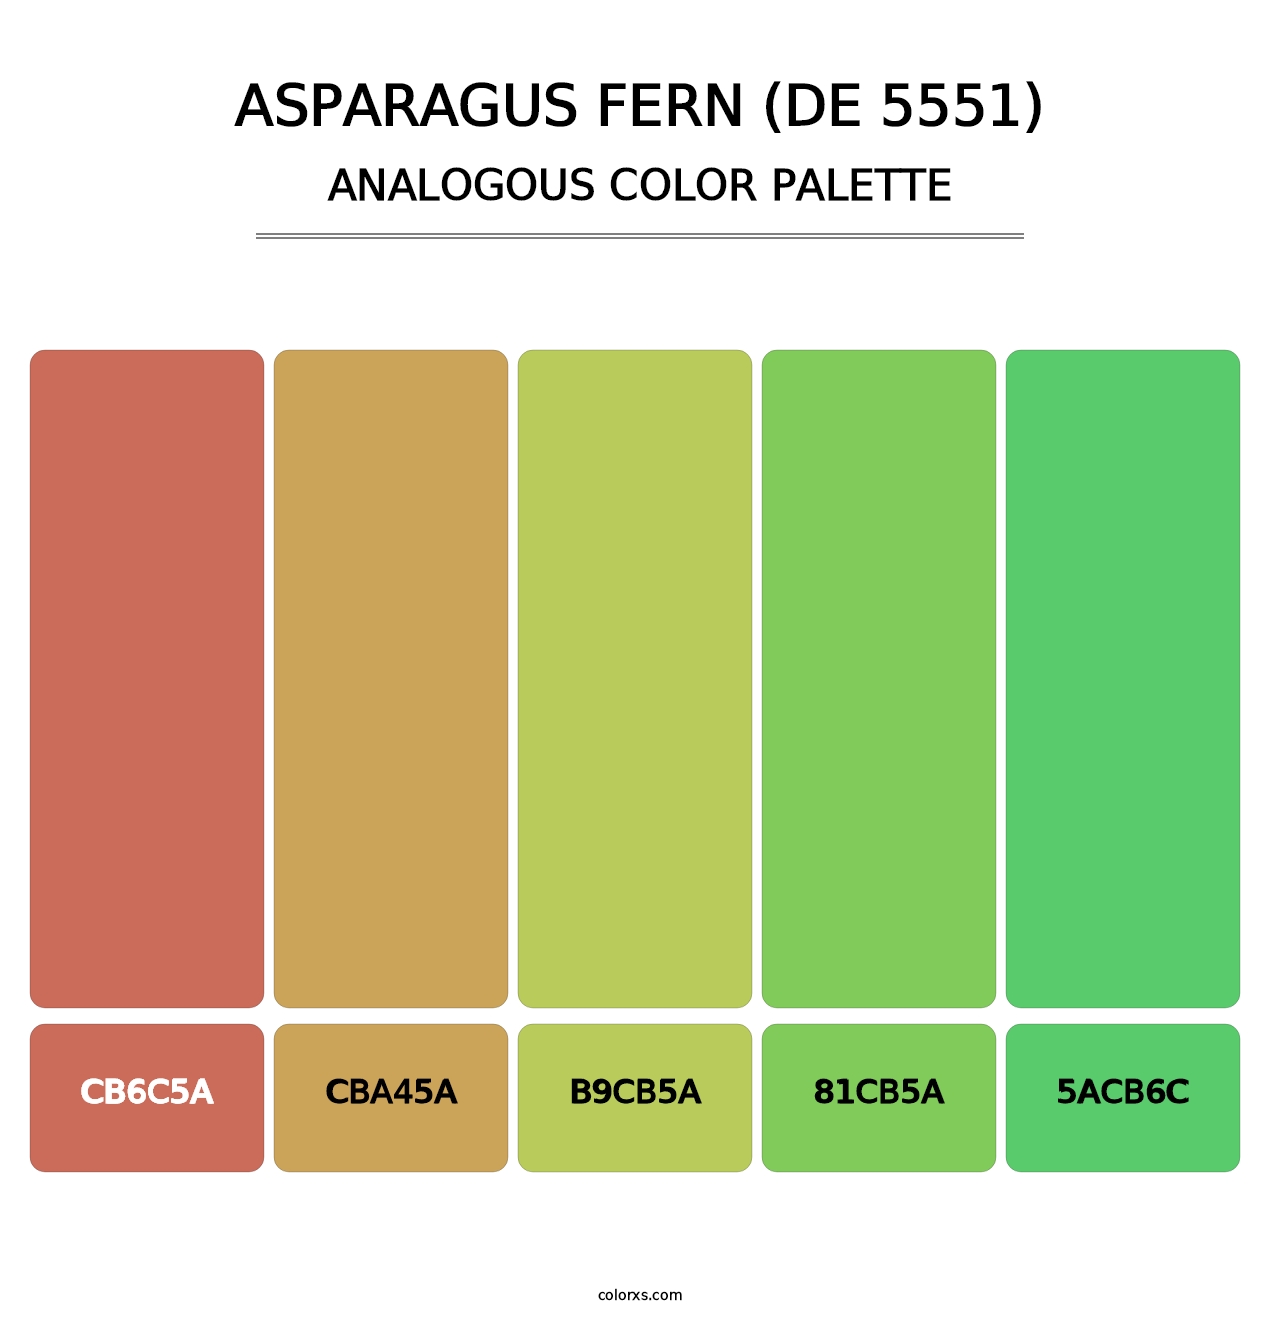 Asparagus Fern (DE 5551) - Analogous Color Palette